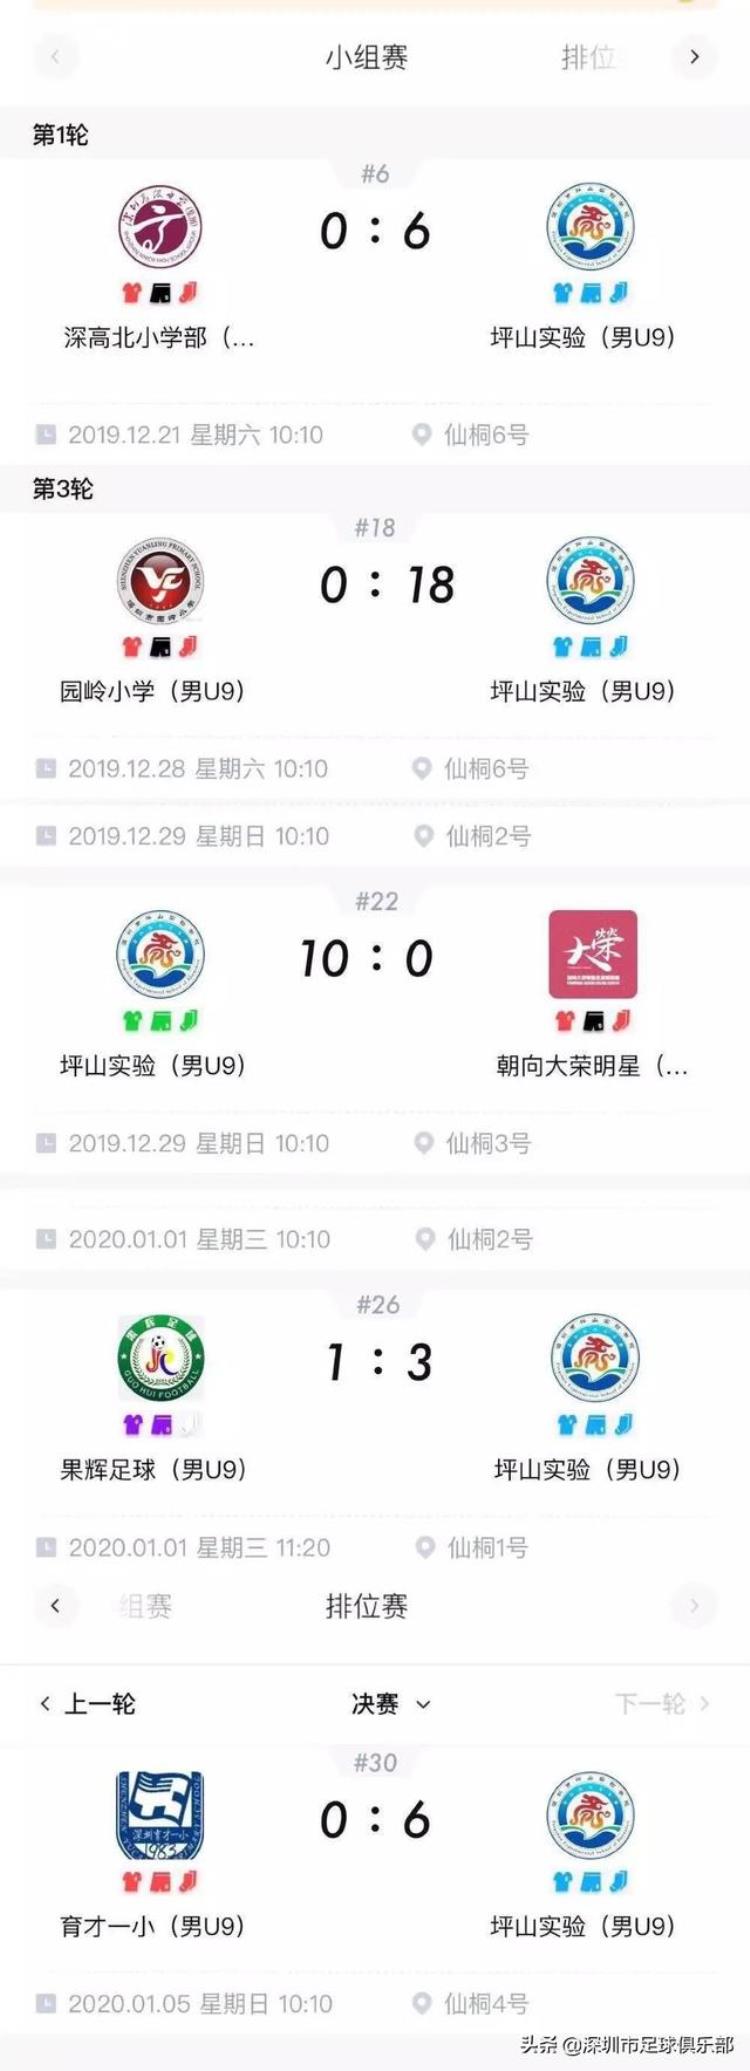 坪山高级中学足球队,2019全国校园足球竞赛日程